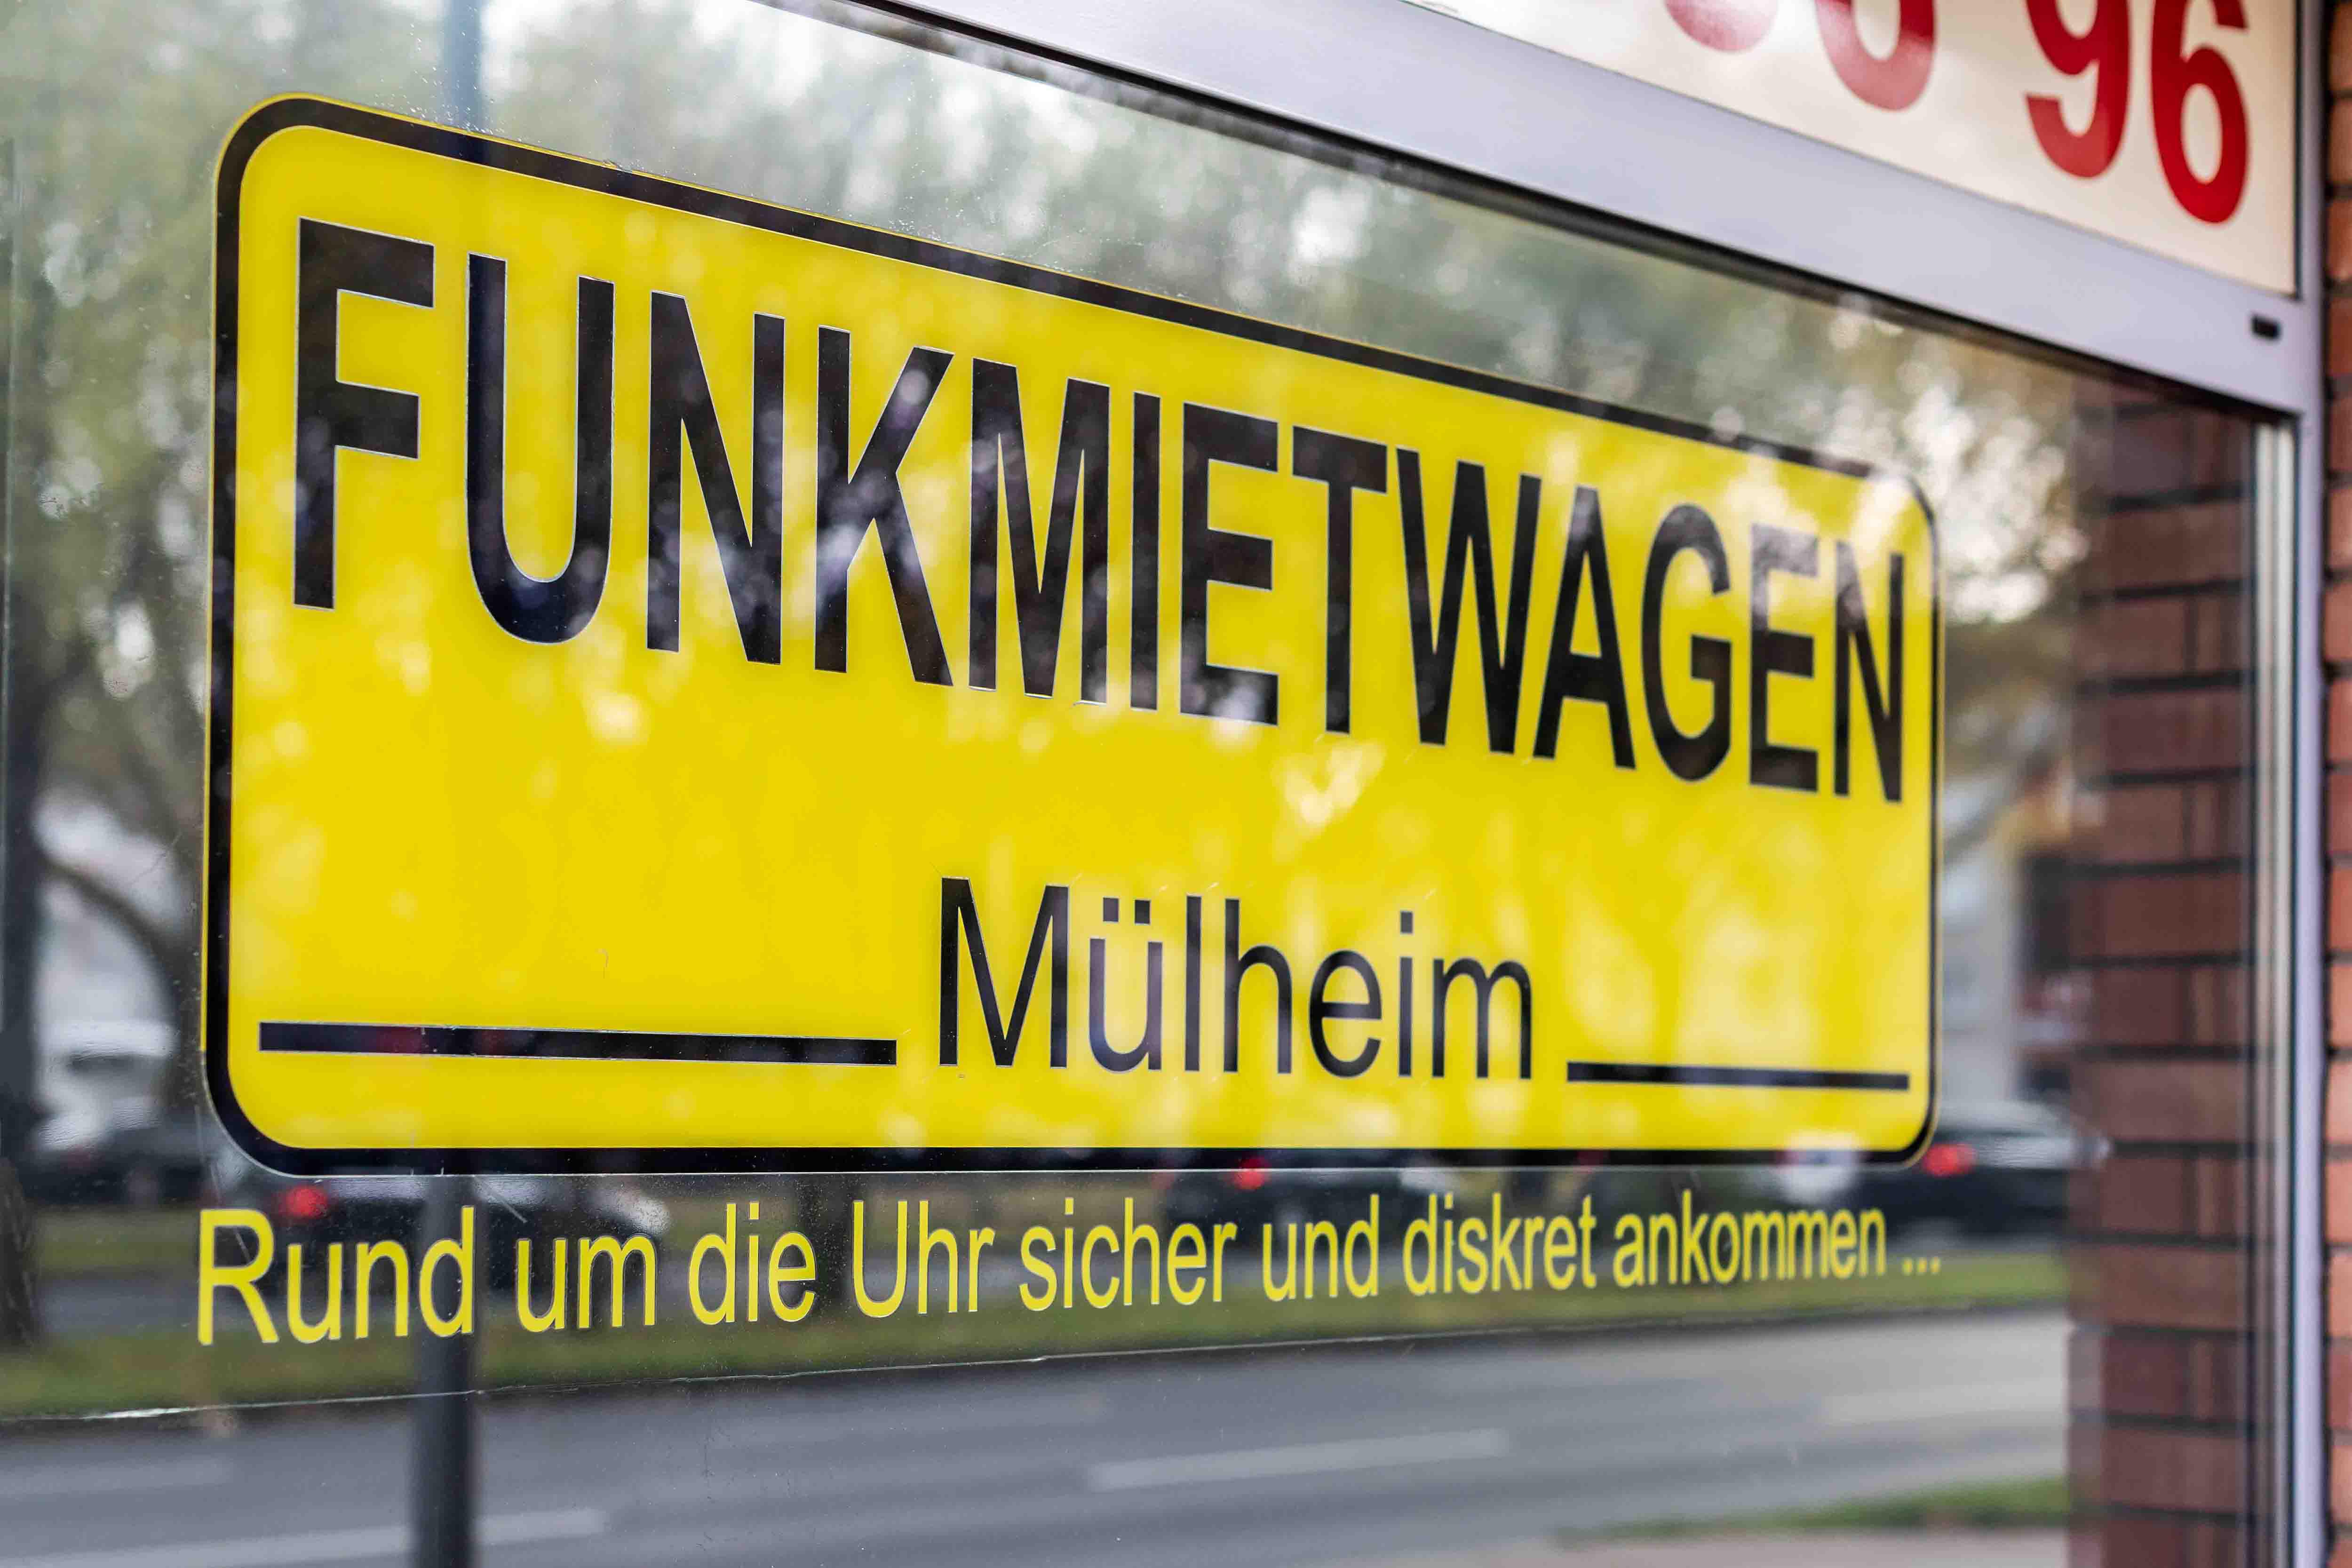 Funktaxi Mülheim, Clevischer Ring 86 in Köln